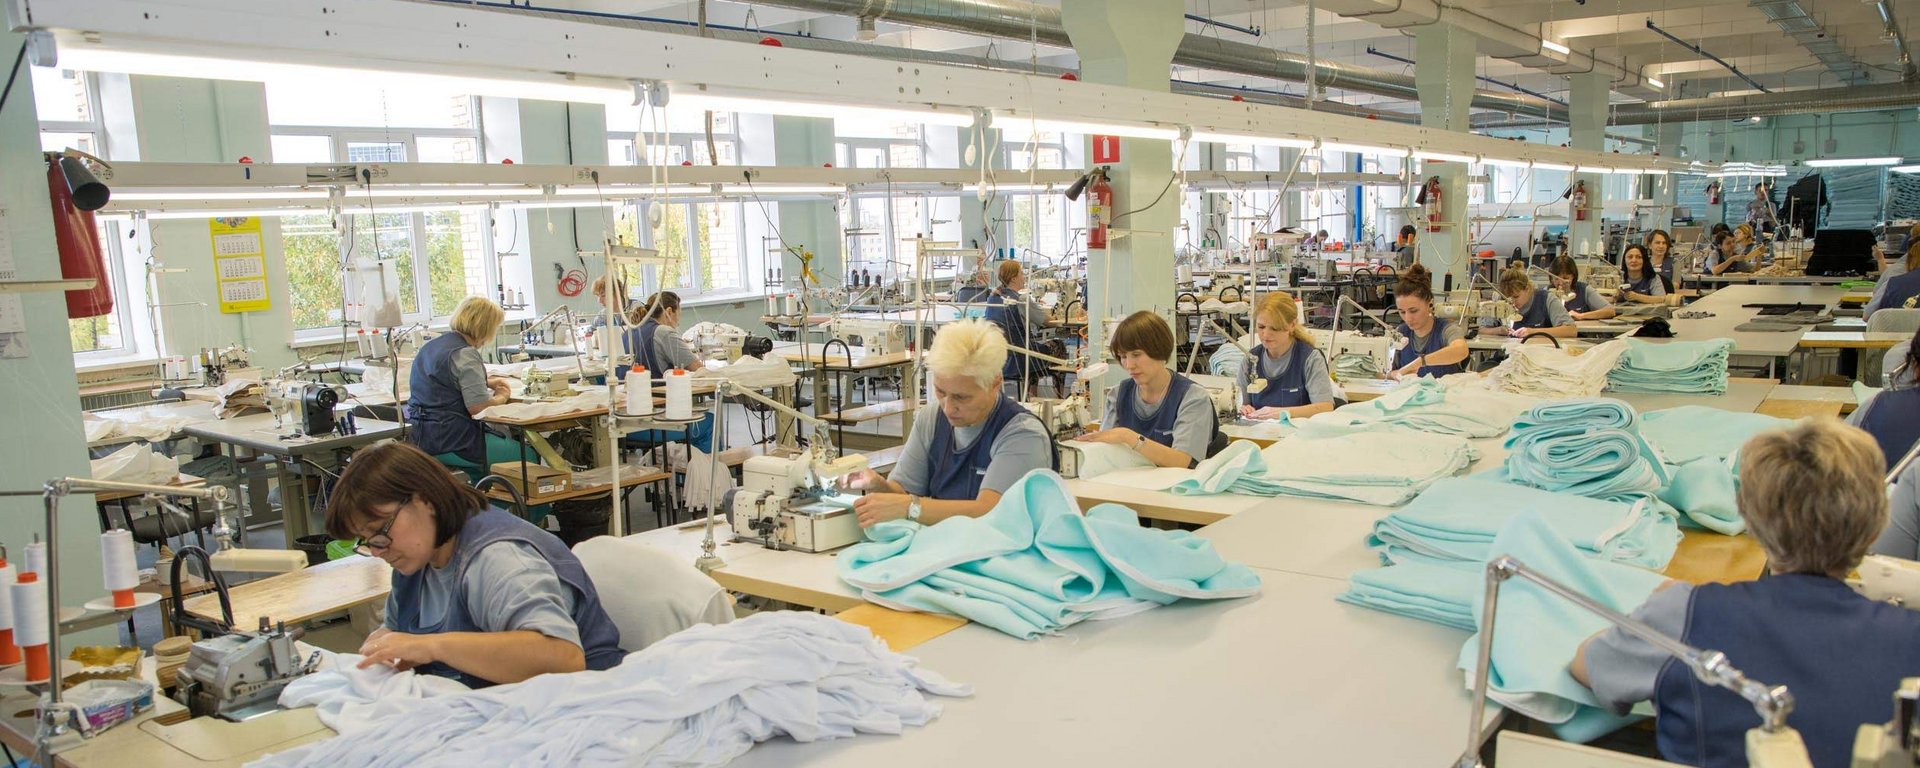 Видео про фабрик. Швейный цех. Швейная промышленность. Современная швейная фабрика. Сотрудники швейного цеха.